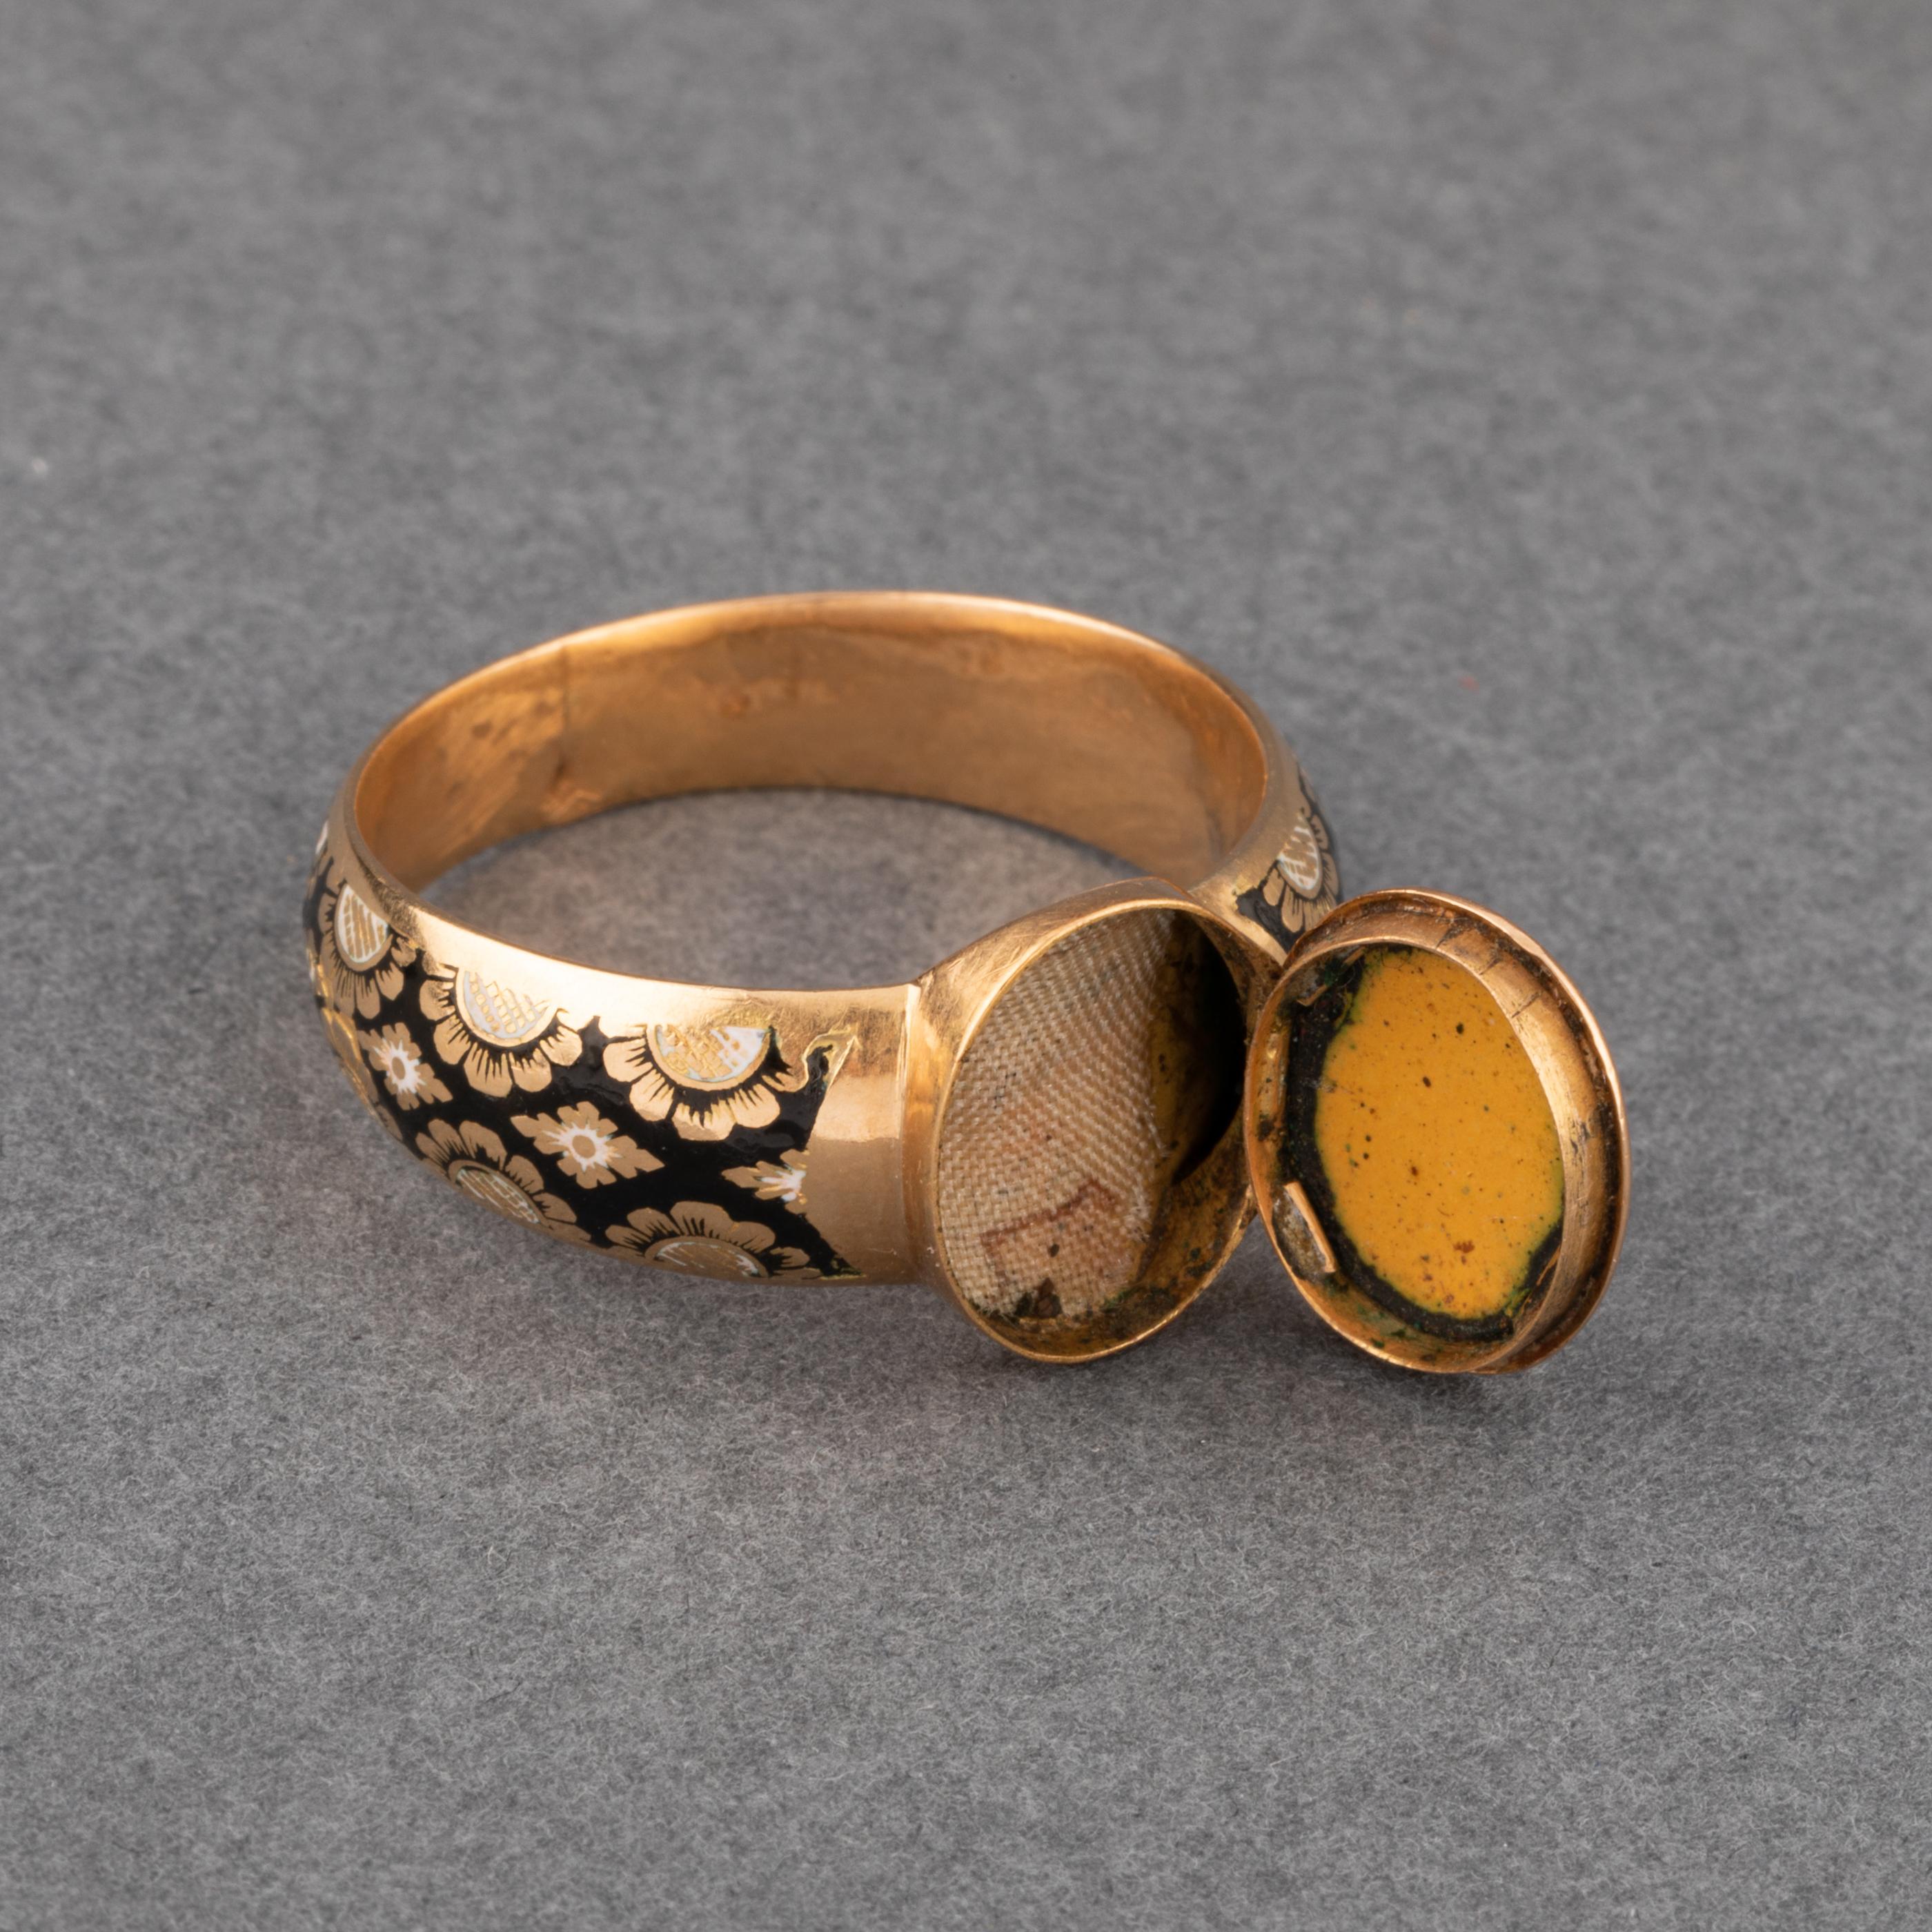 Antique Gold and Enamel Secret Ring 2